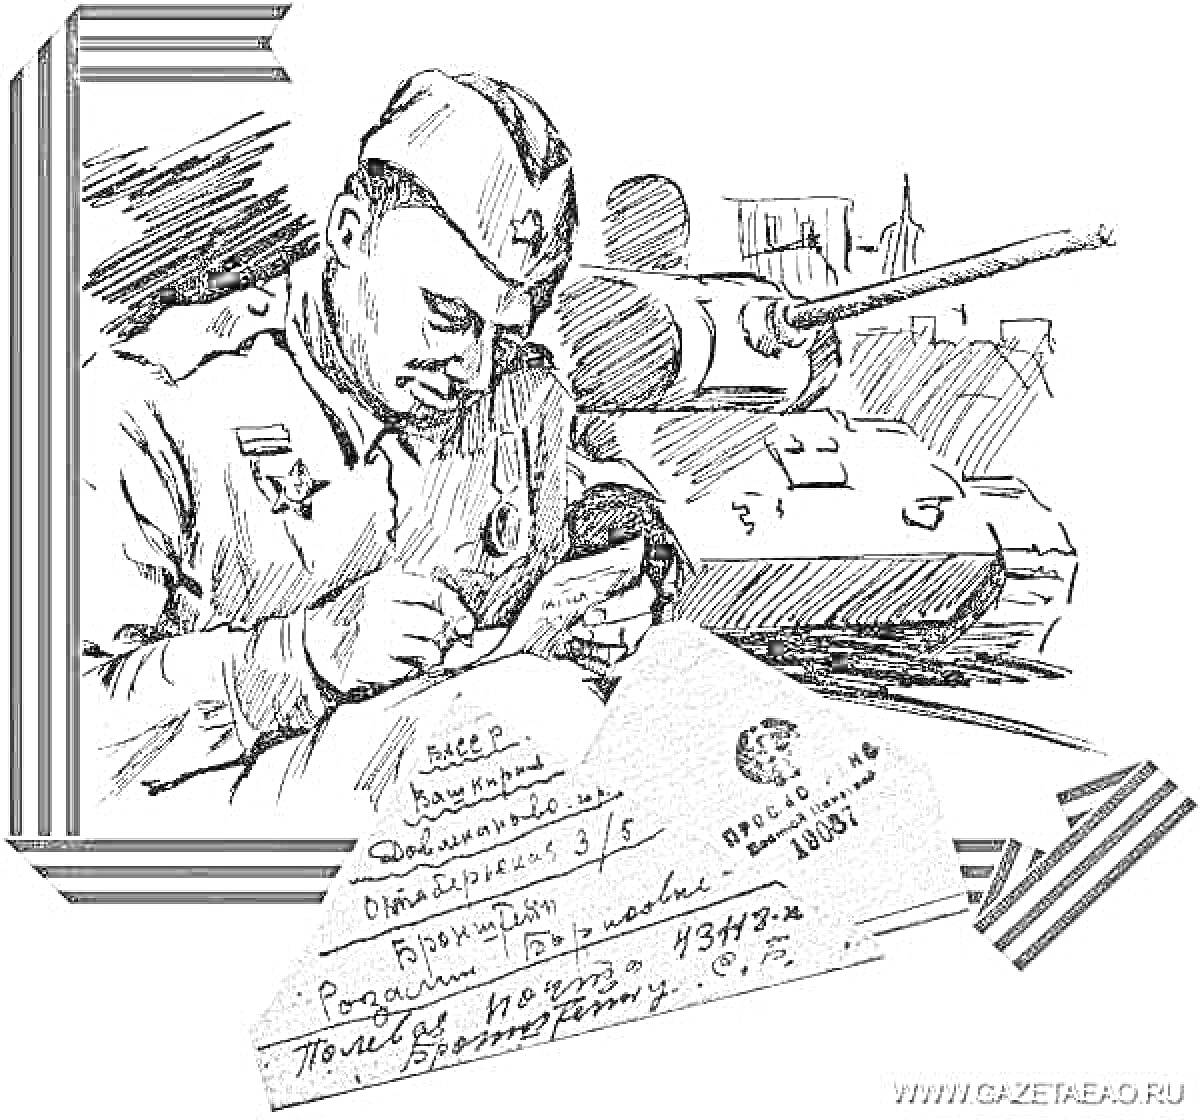 Солдат, пишущий письмо, письмо, танк, георгиевская ленточка